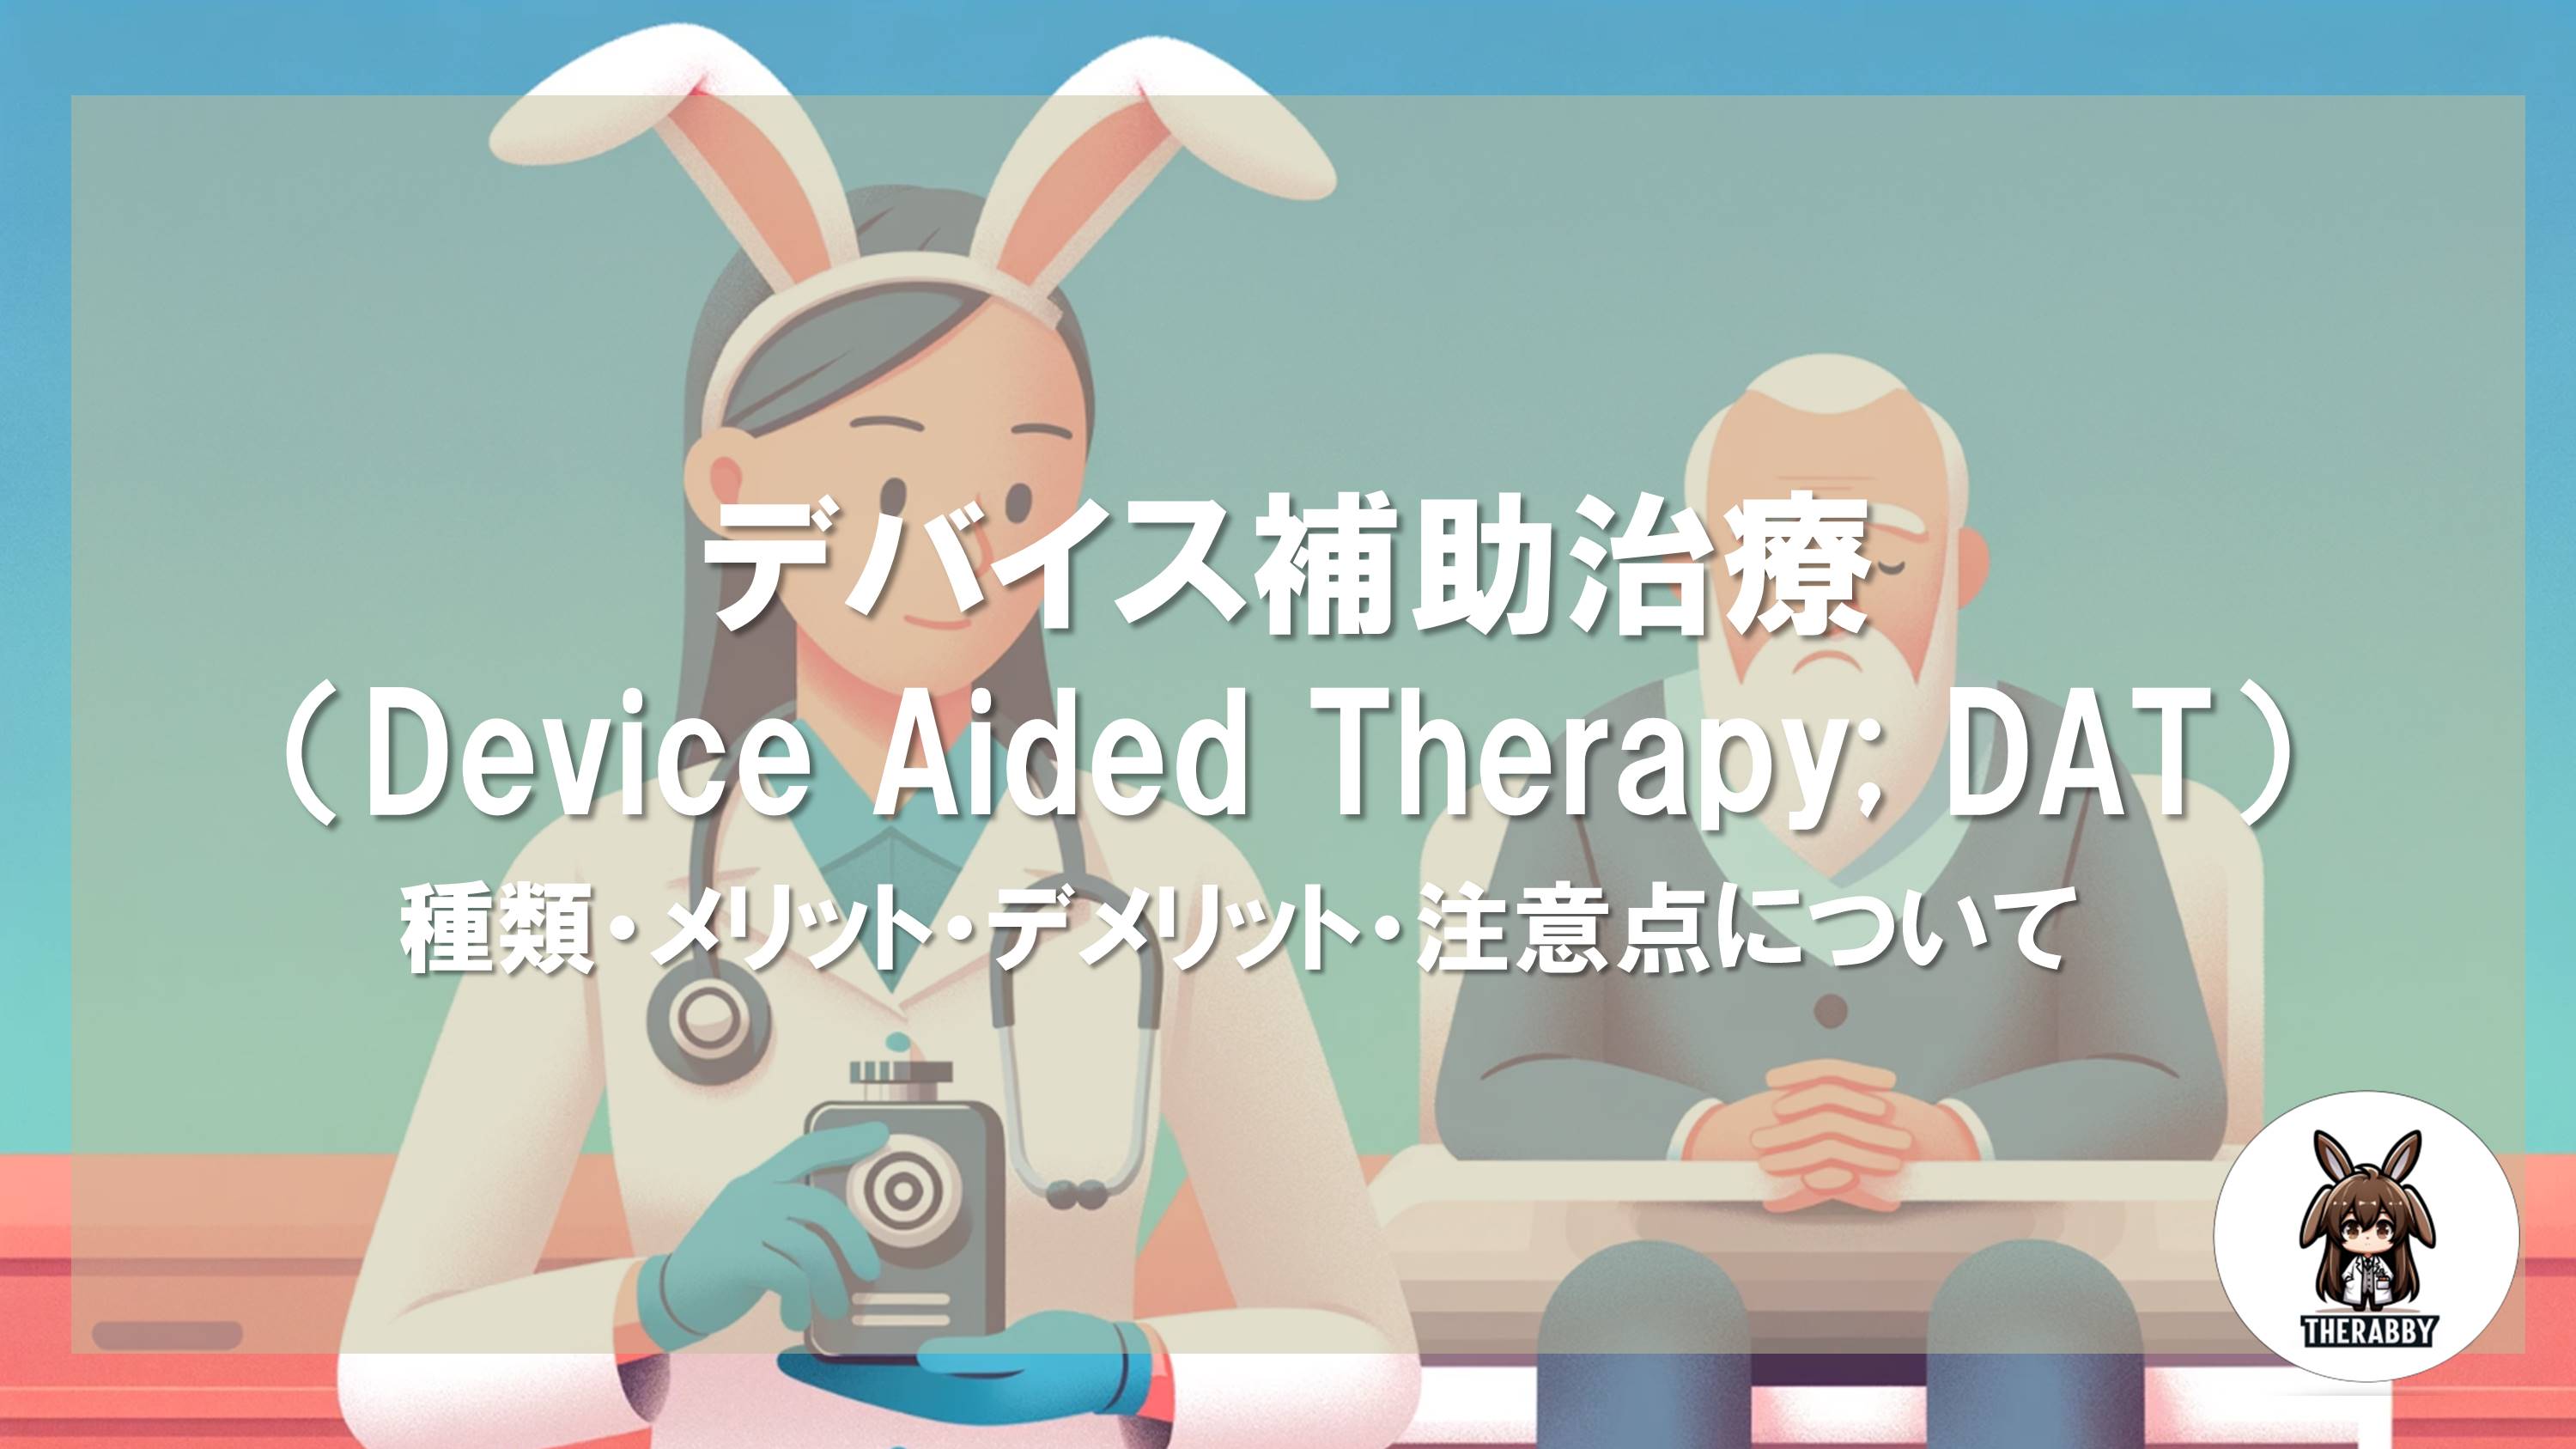 デバイス補助治療（Device Aided Therapy; DAT） - 種類・メリット・デメリット・注意点について